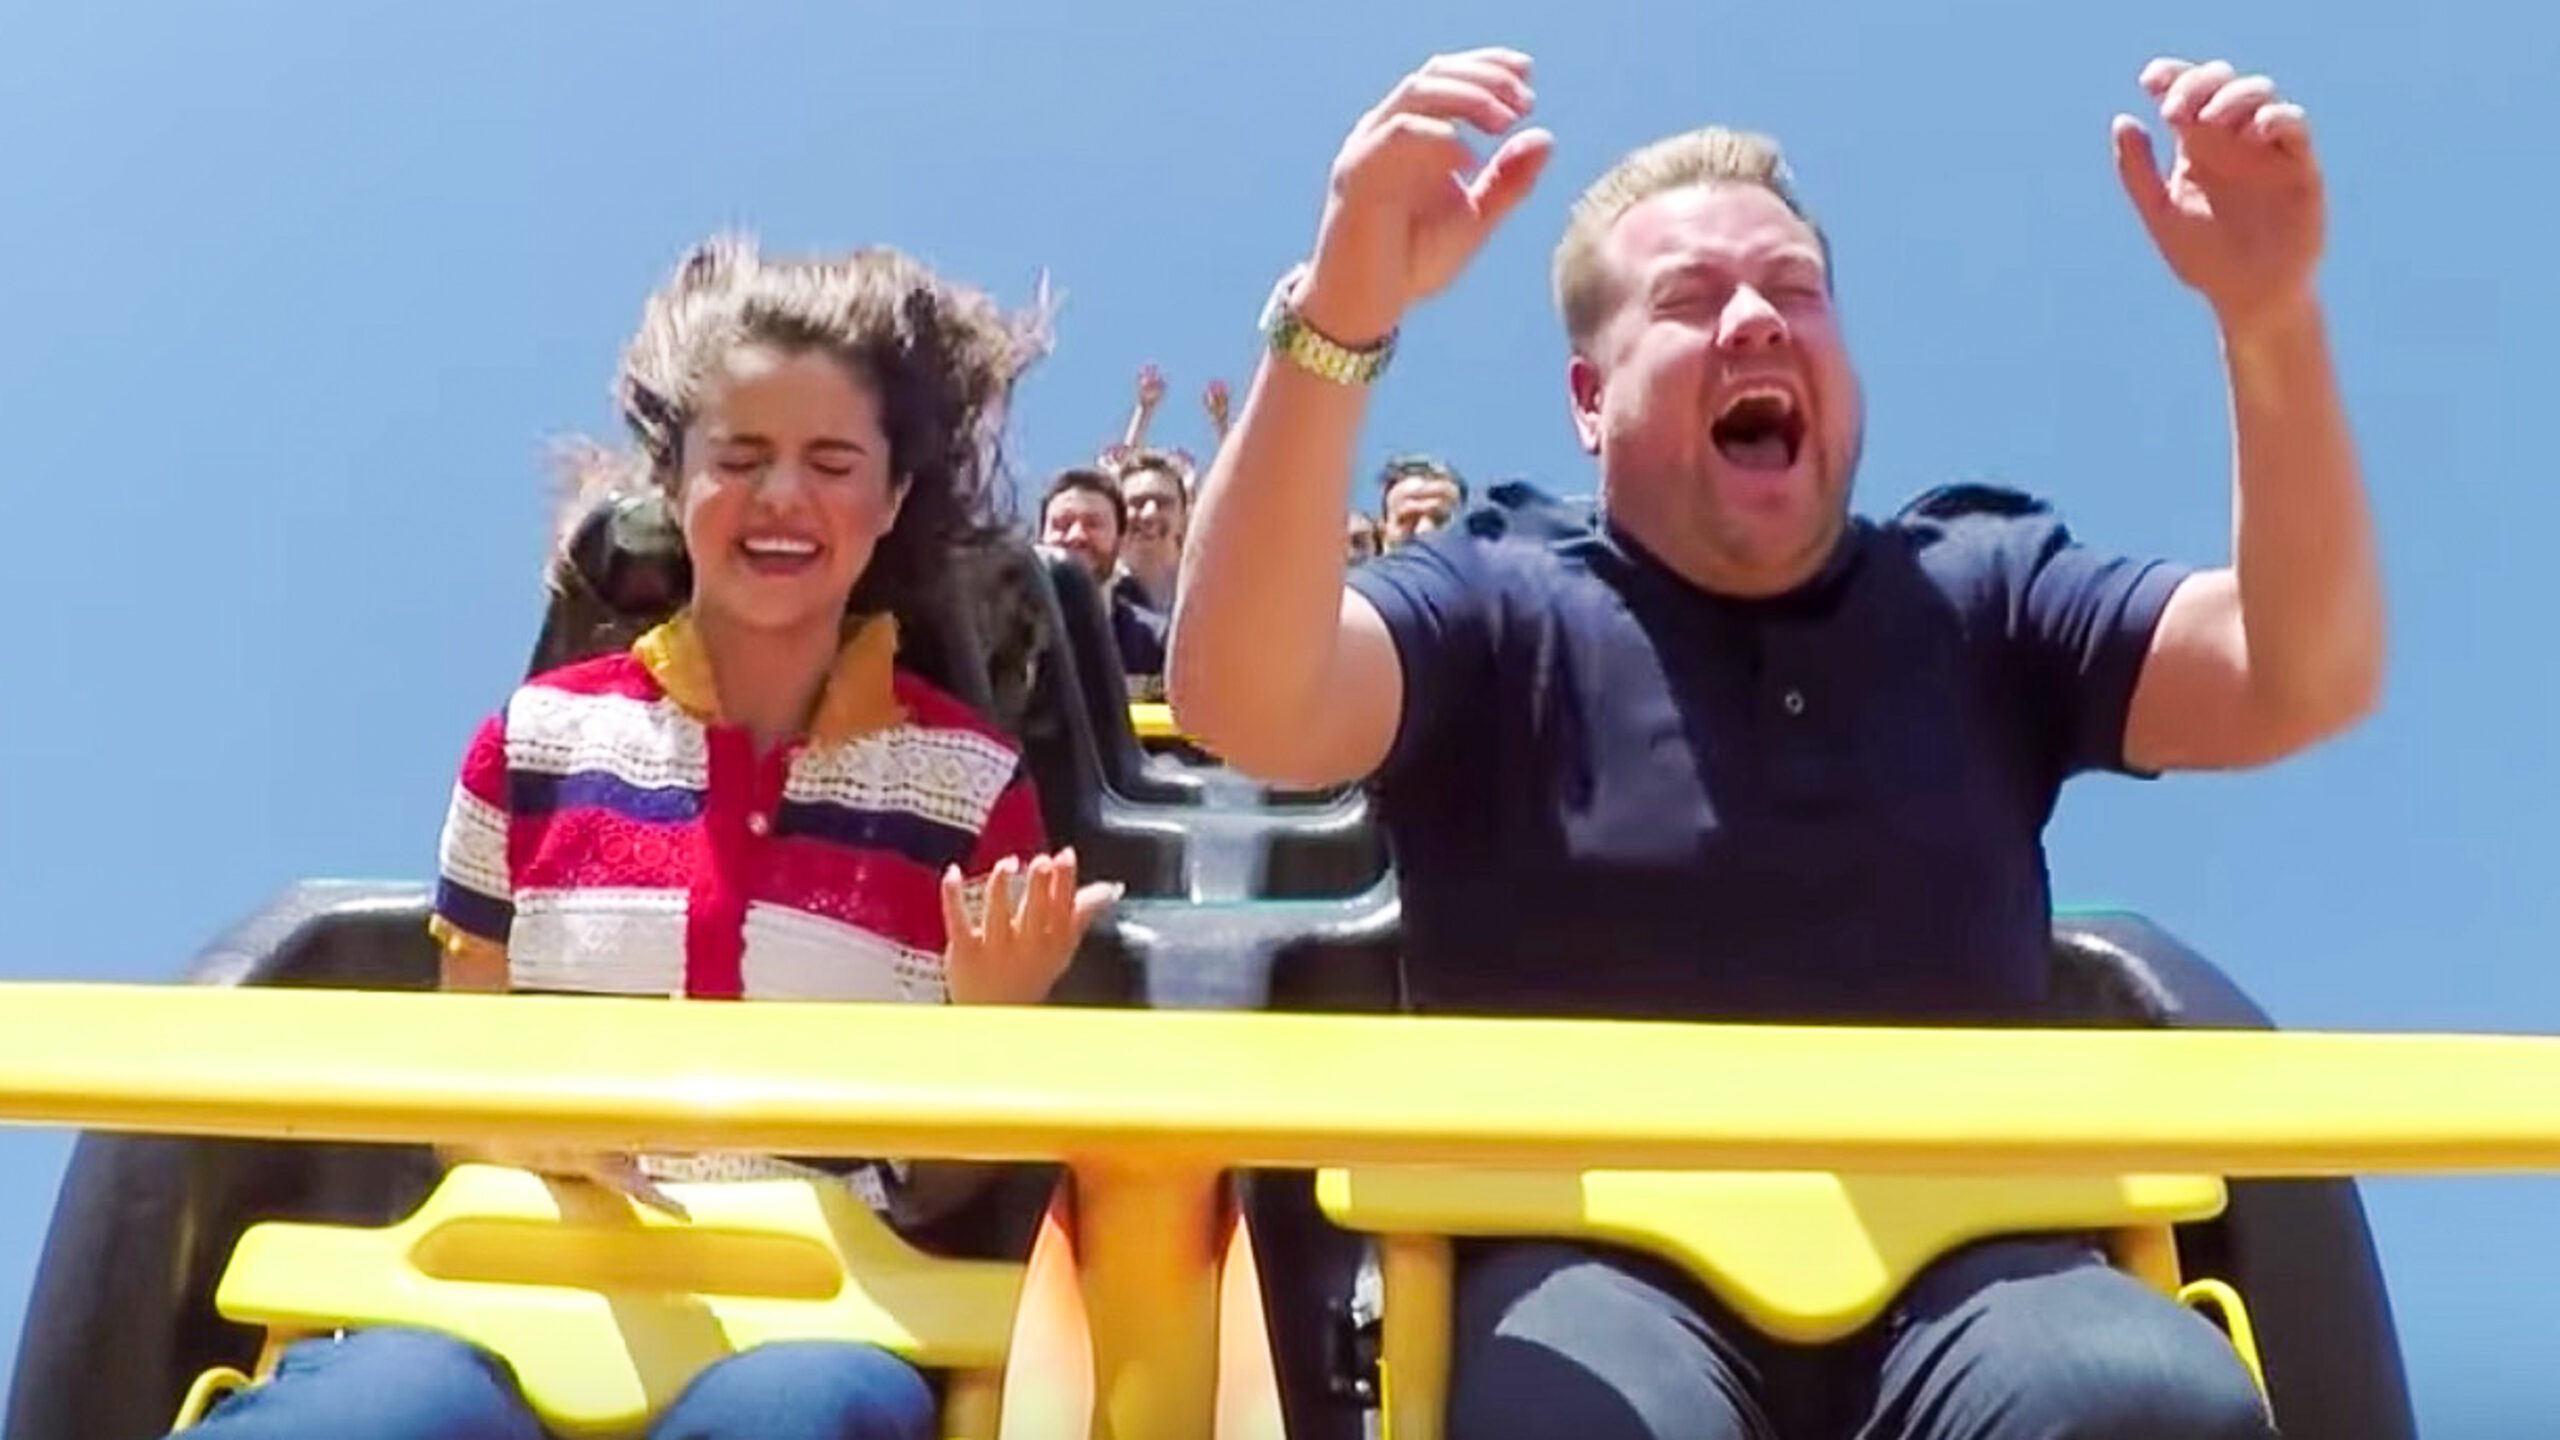 WATCH: Selena Gomez rocks out, rides rollercoaster on ‘Carpool Karaoke’